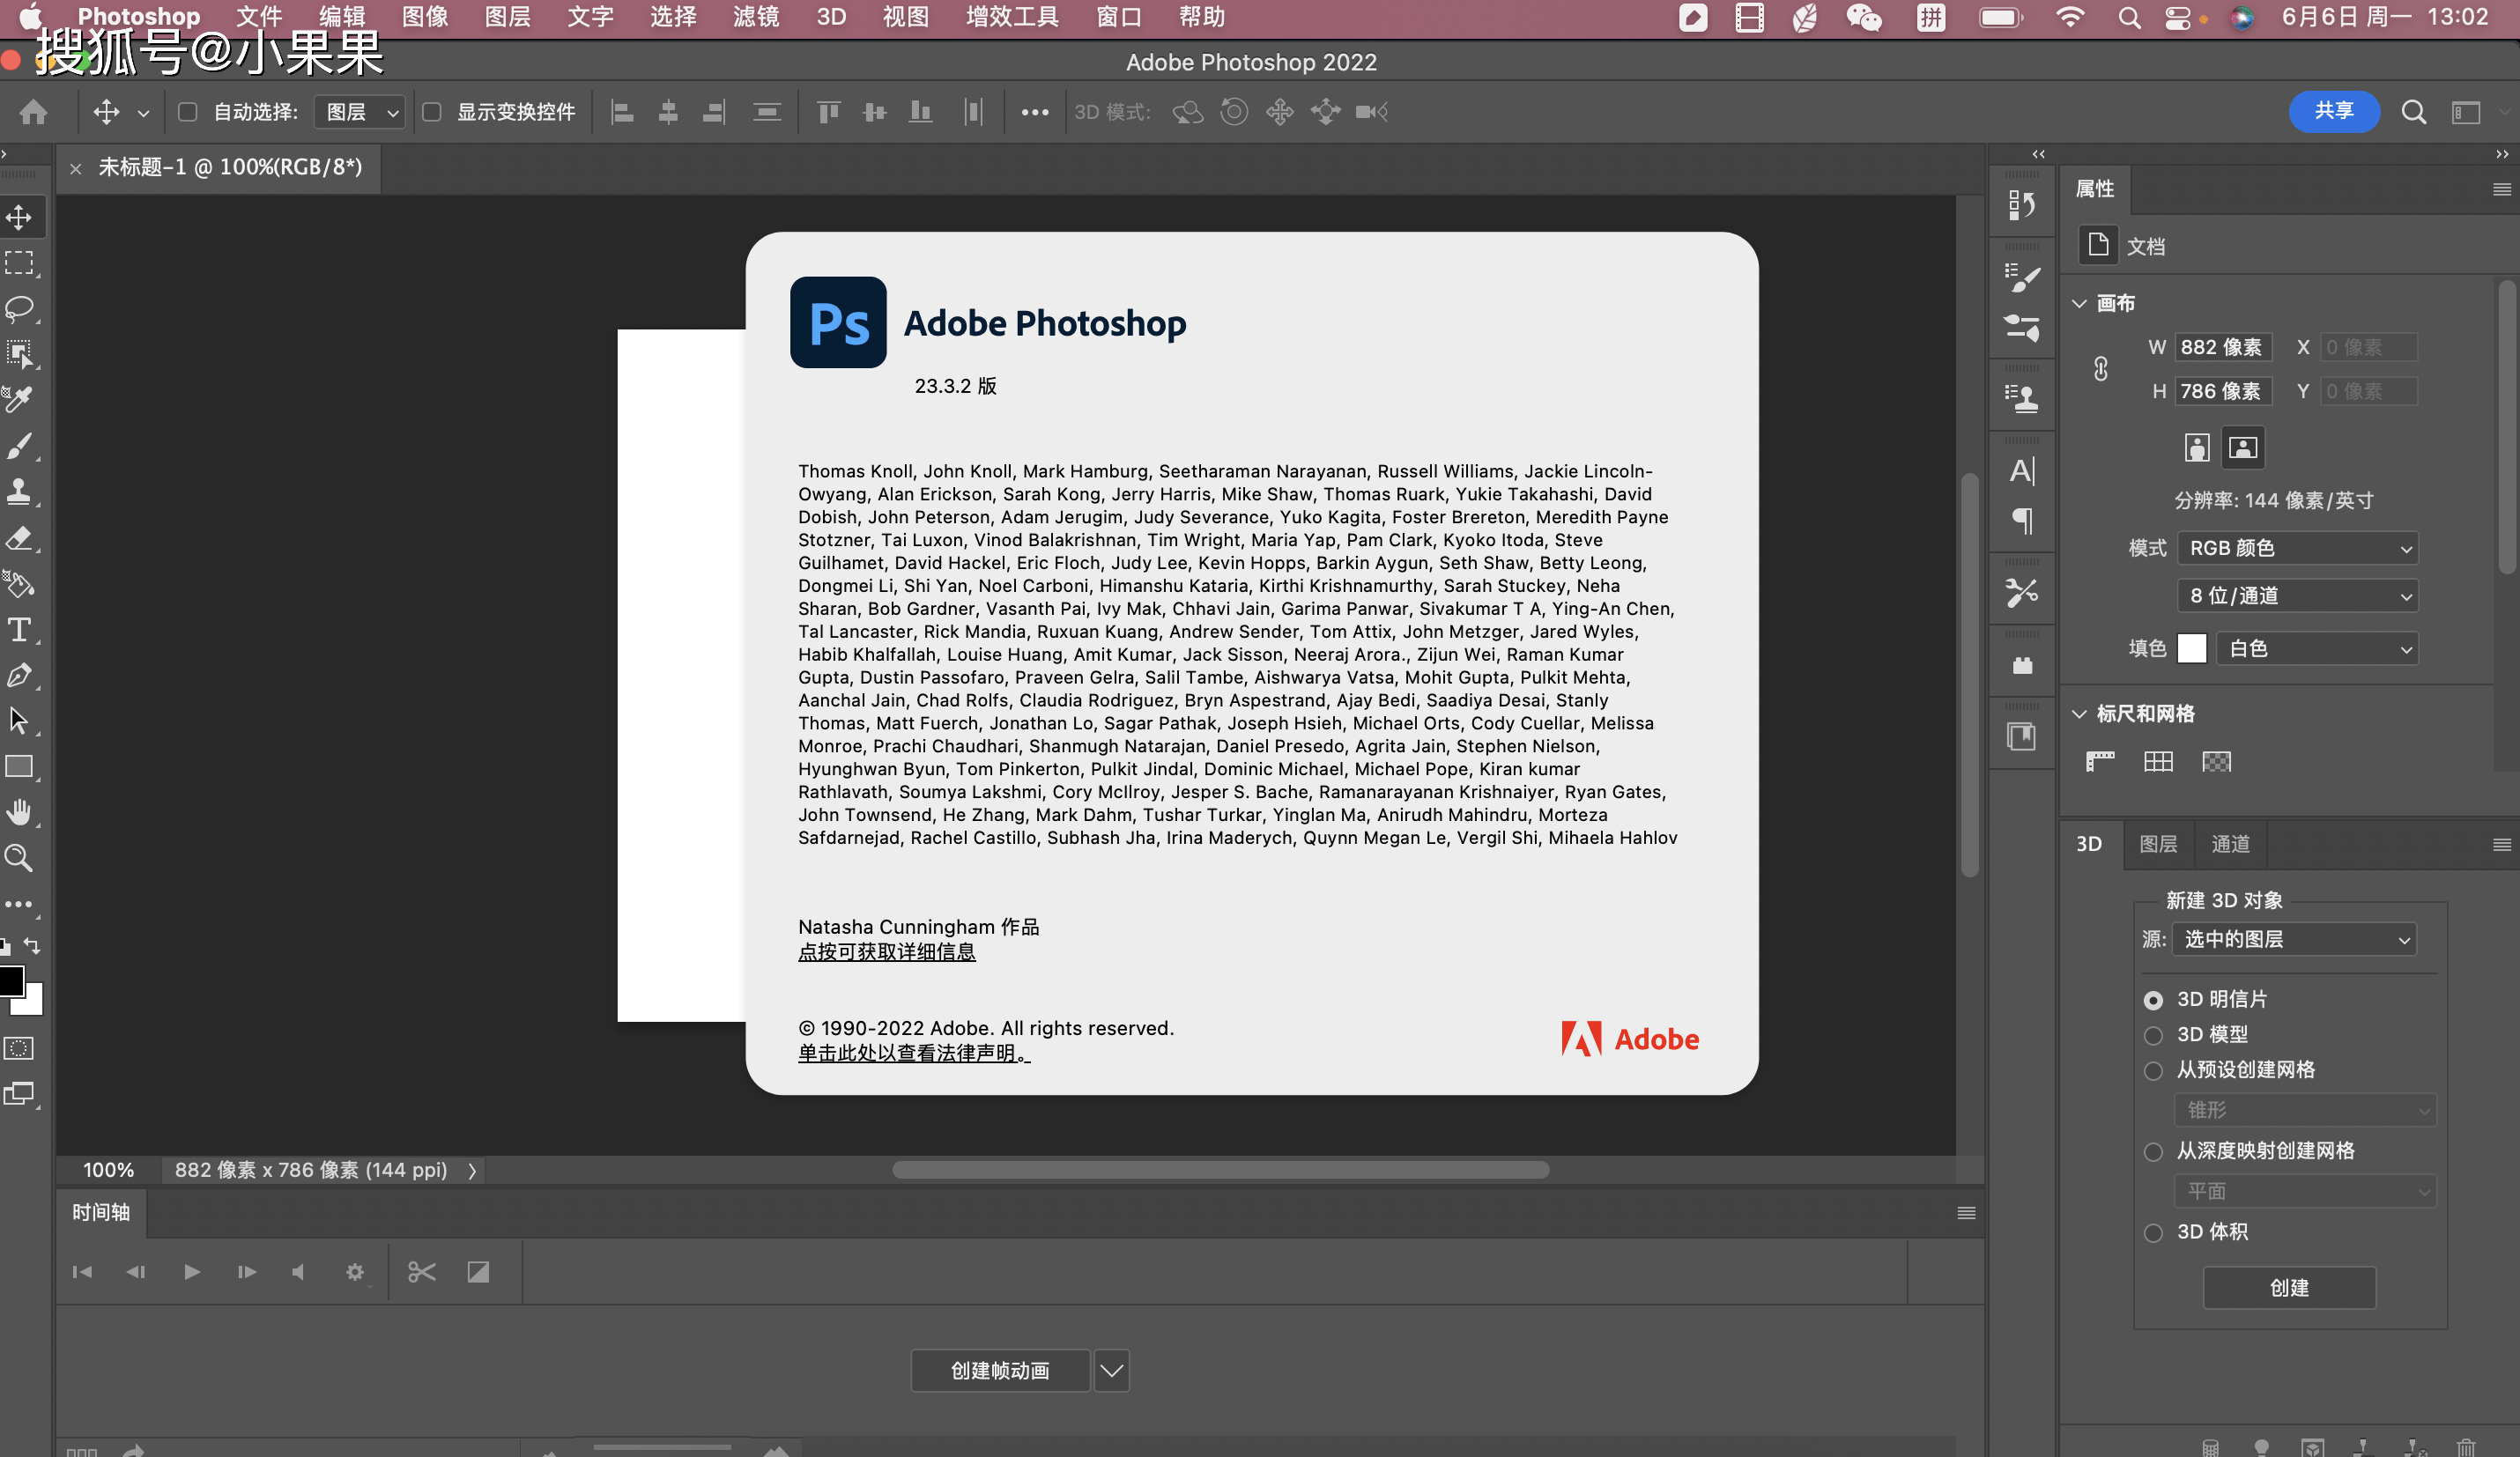 Adobe Photoshop 2022 for Mac版下载安装教程 支持M1芯片